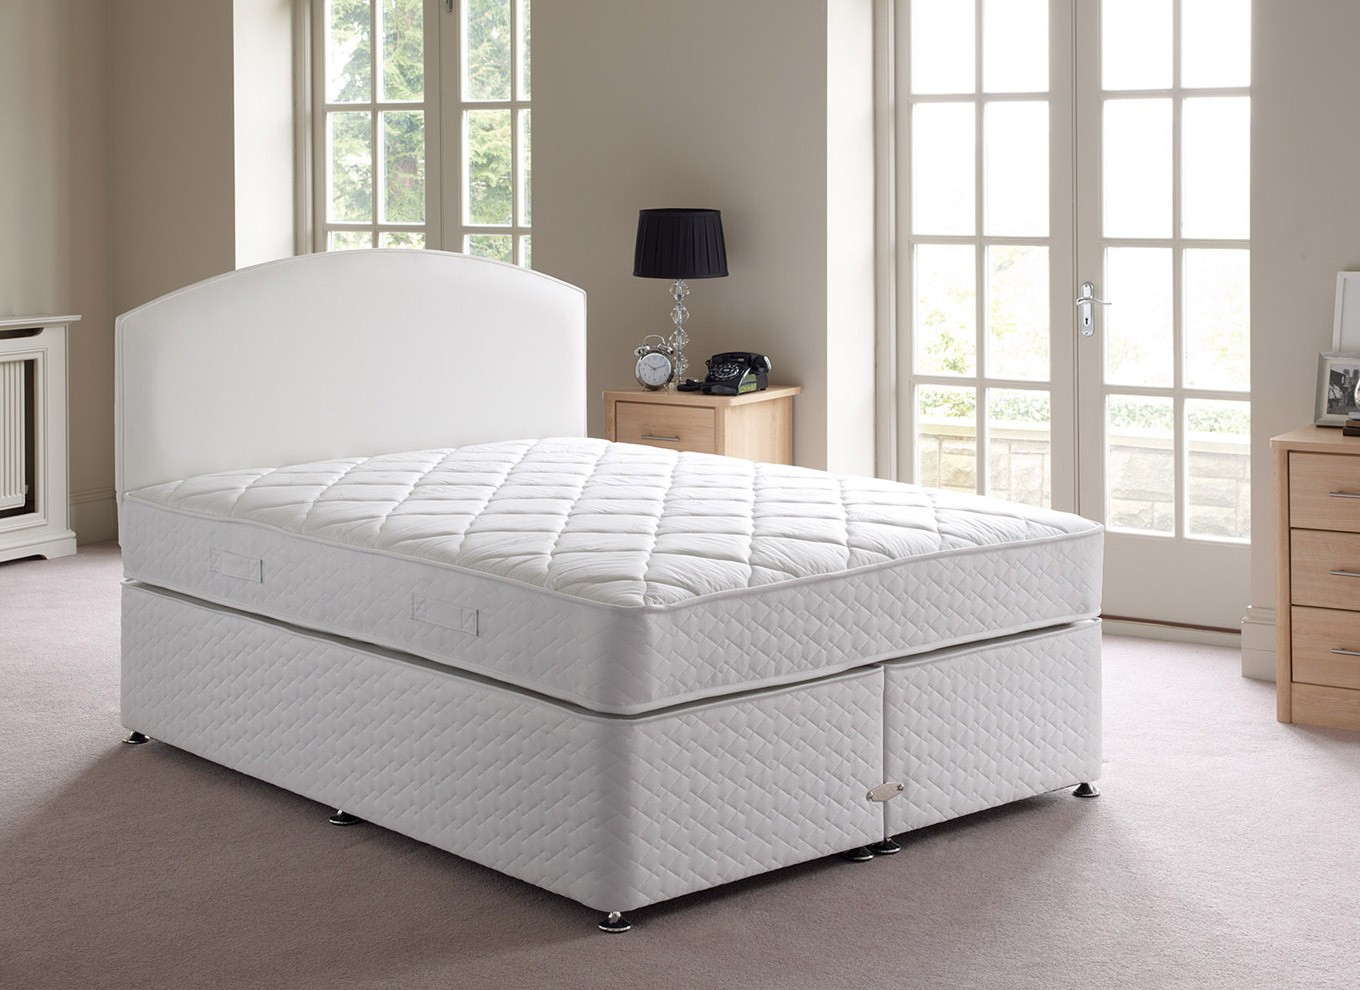 king size sleepwell mattress price